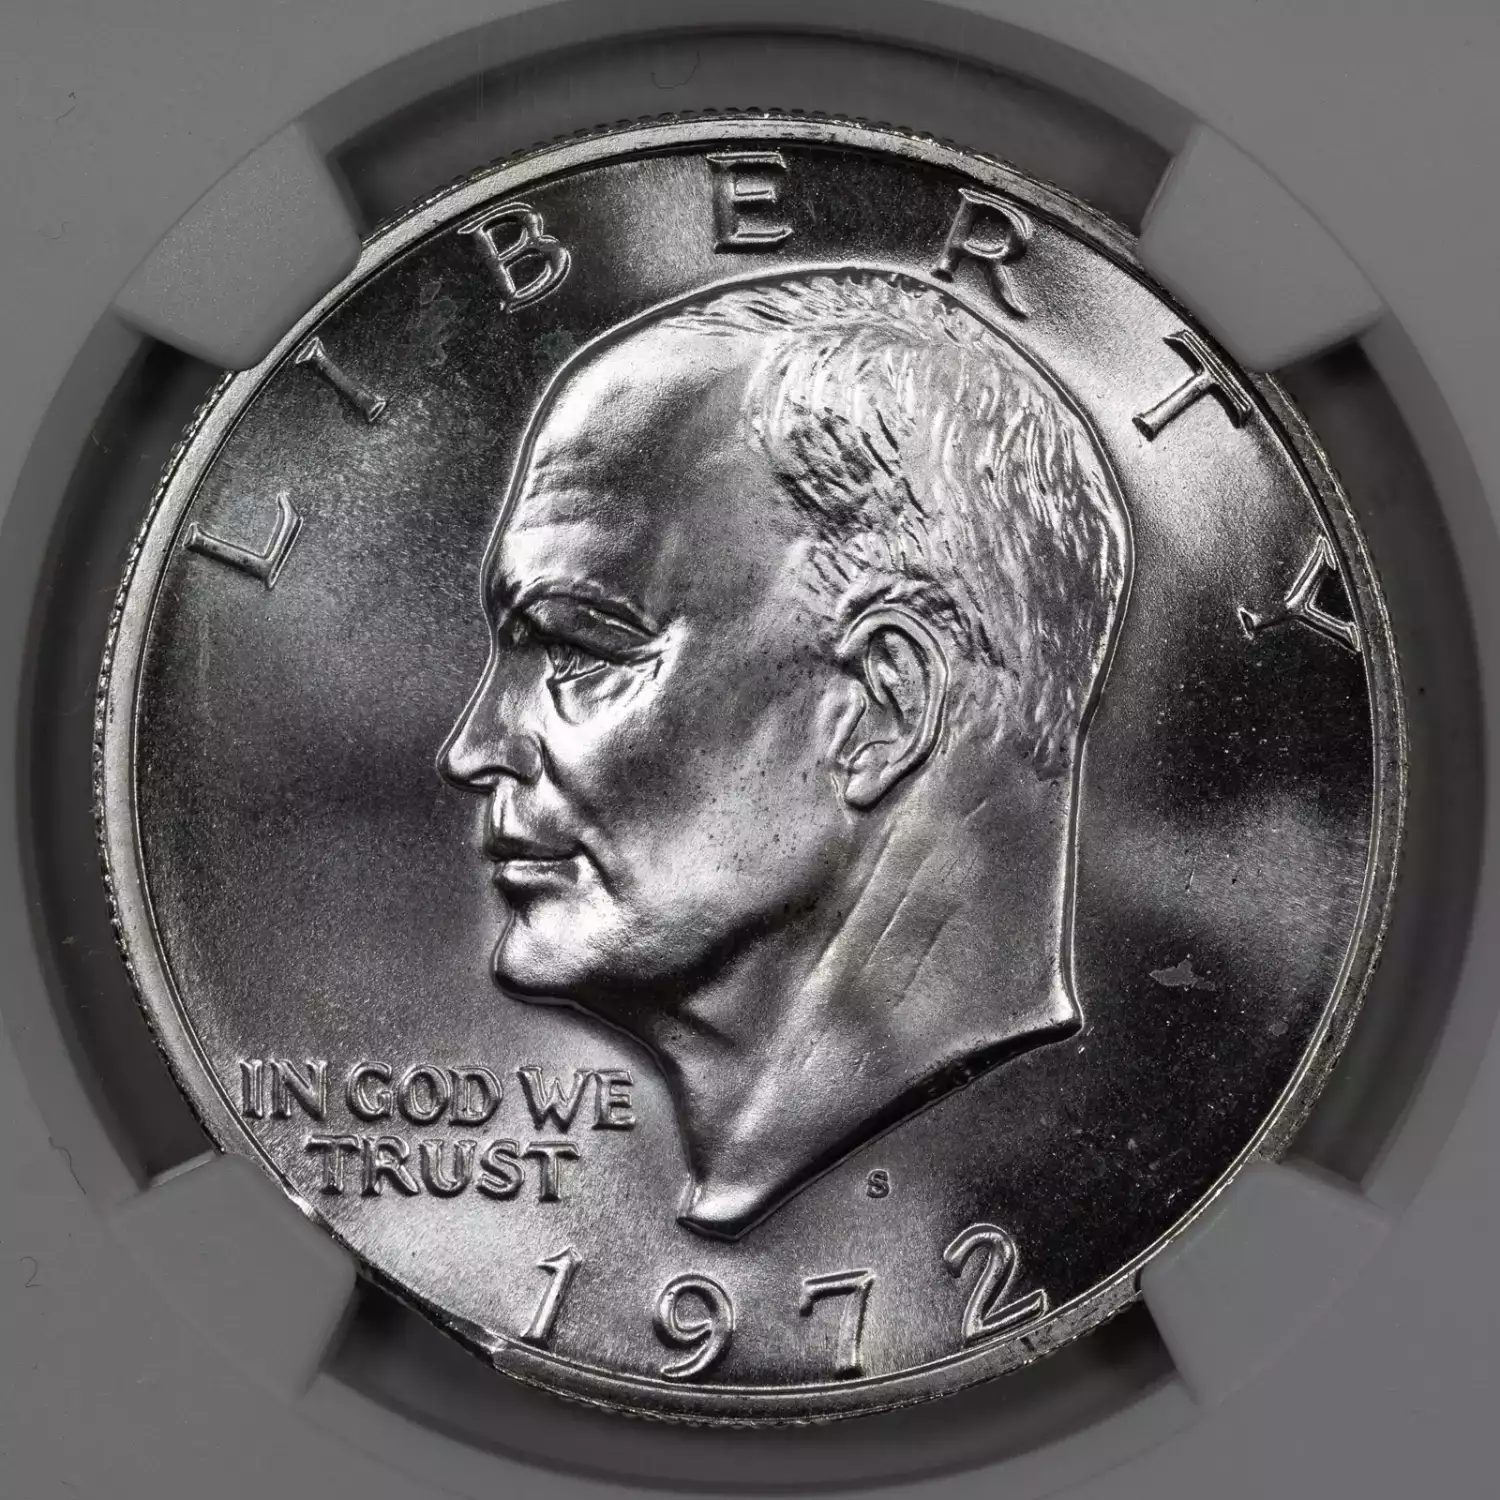 Eisenhower Silver Dollar (1971-1978) - 40% Silver